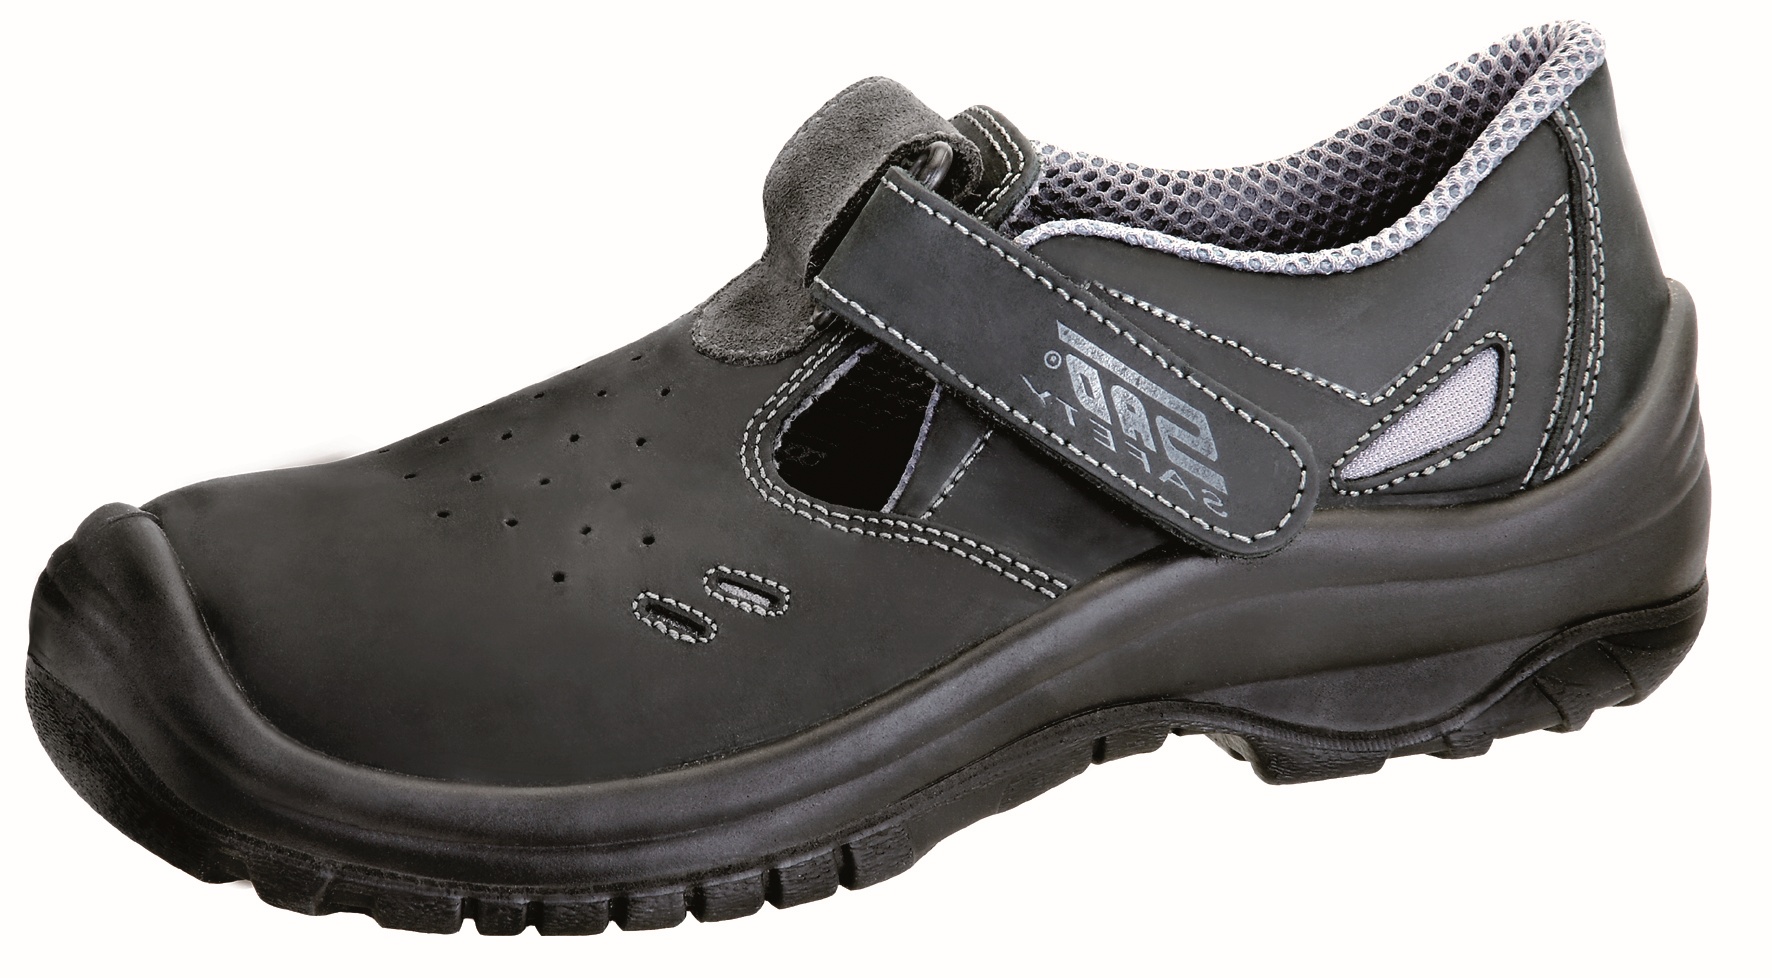 Obuv sandál SAFETY STEEL COPPER O1, černý